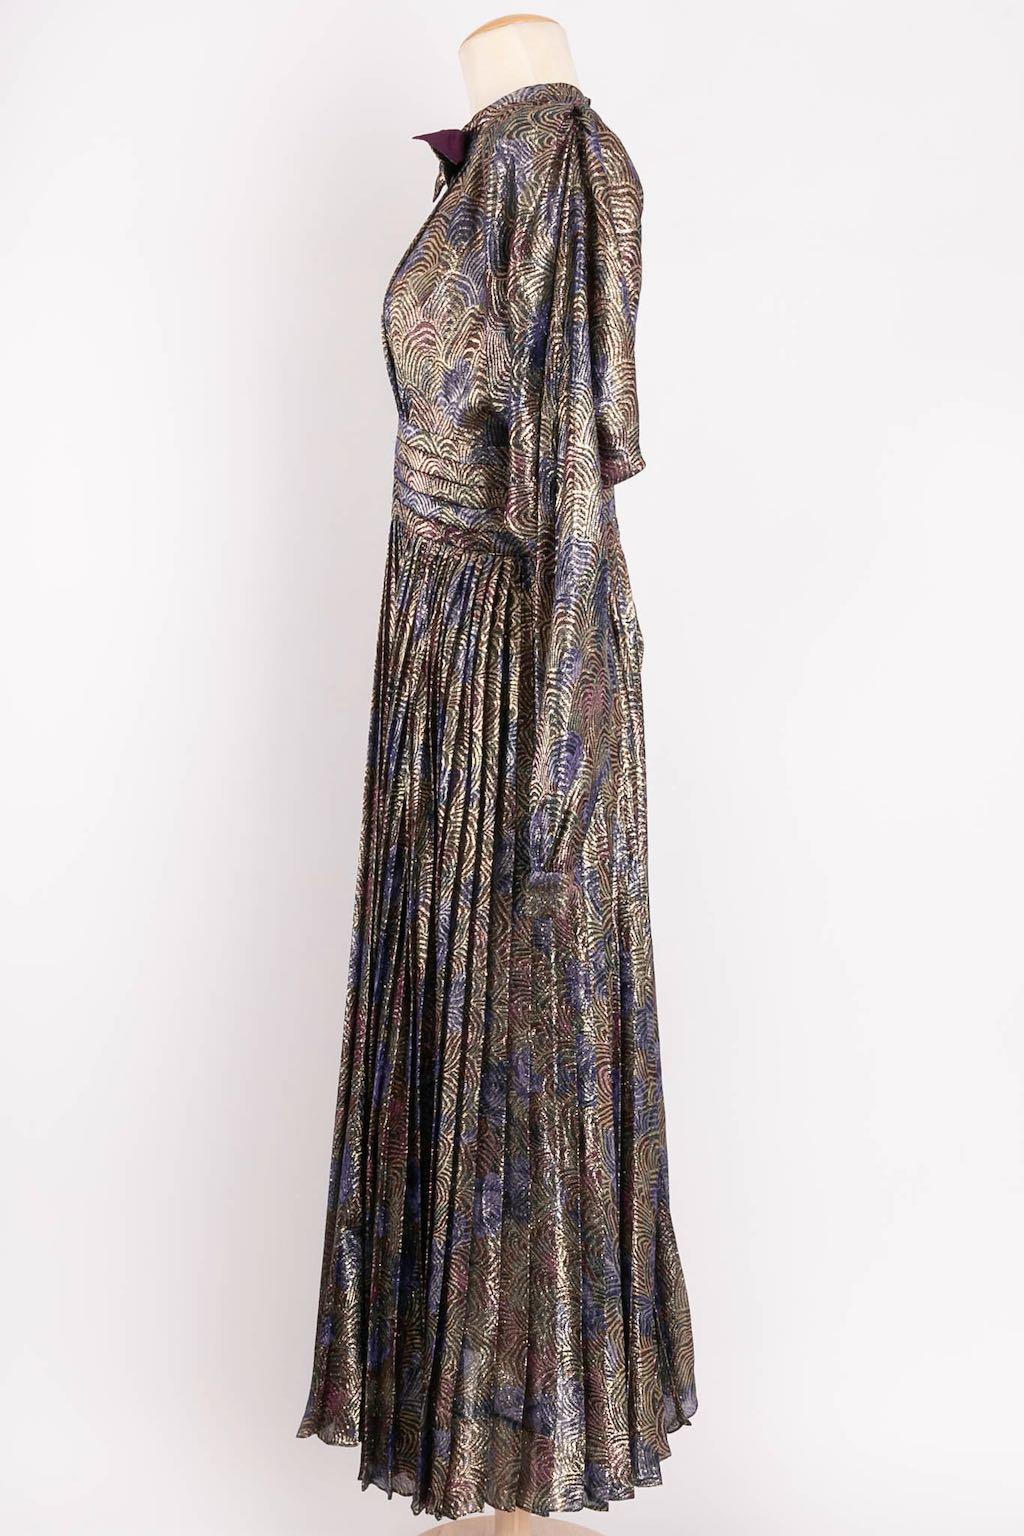 Nina Ricci (Made in France) Lamé-Kleid. Keine Zusammensetzung oder Größe Tag, es passt eine Größe 36FR.

Zusätzliche Informationen: 
Abmessungen: Schultern: 44 cm (17.32